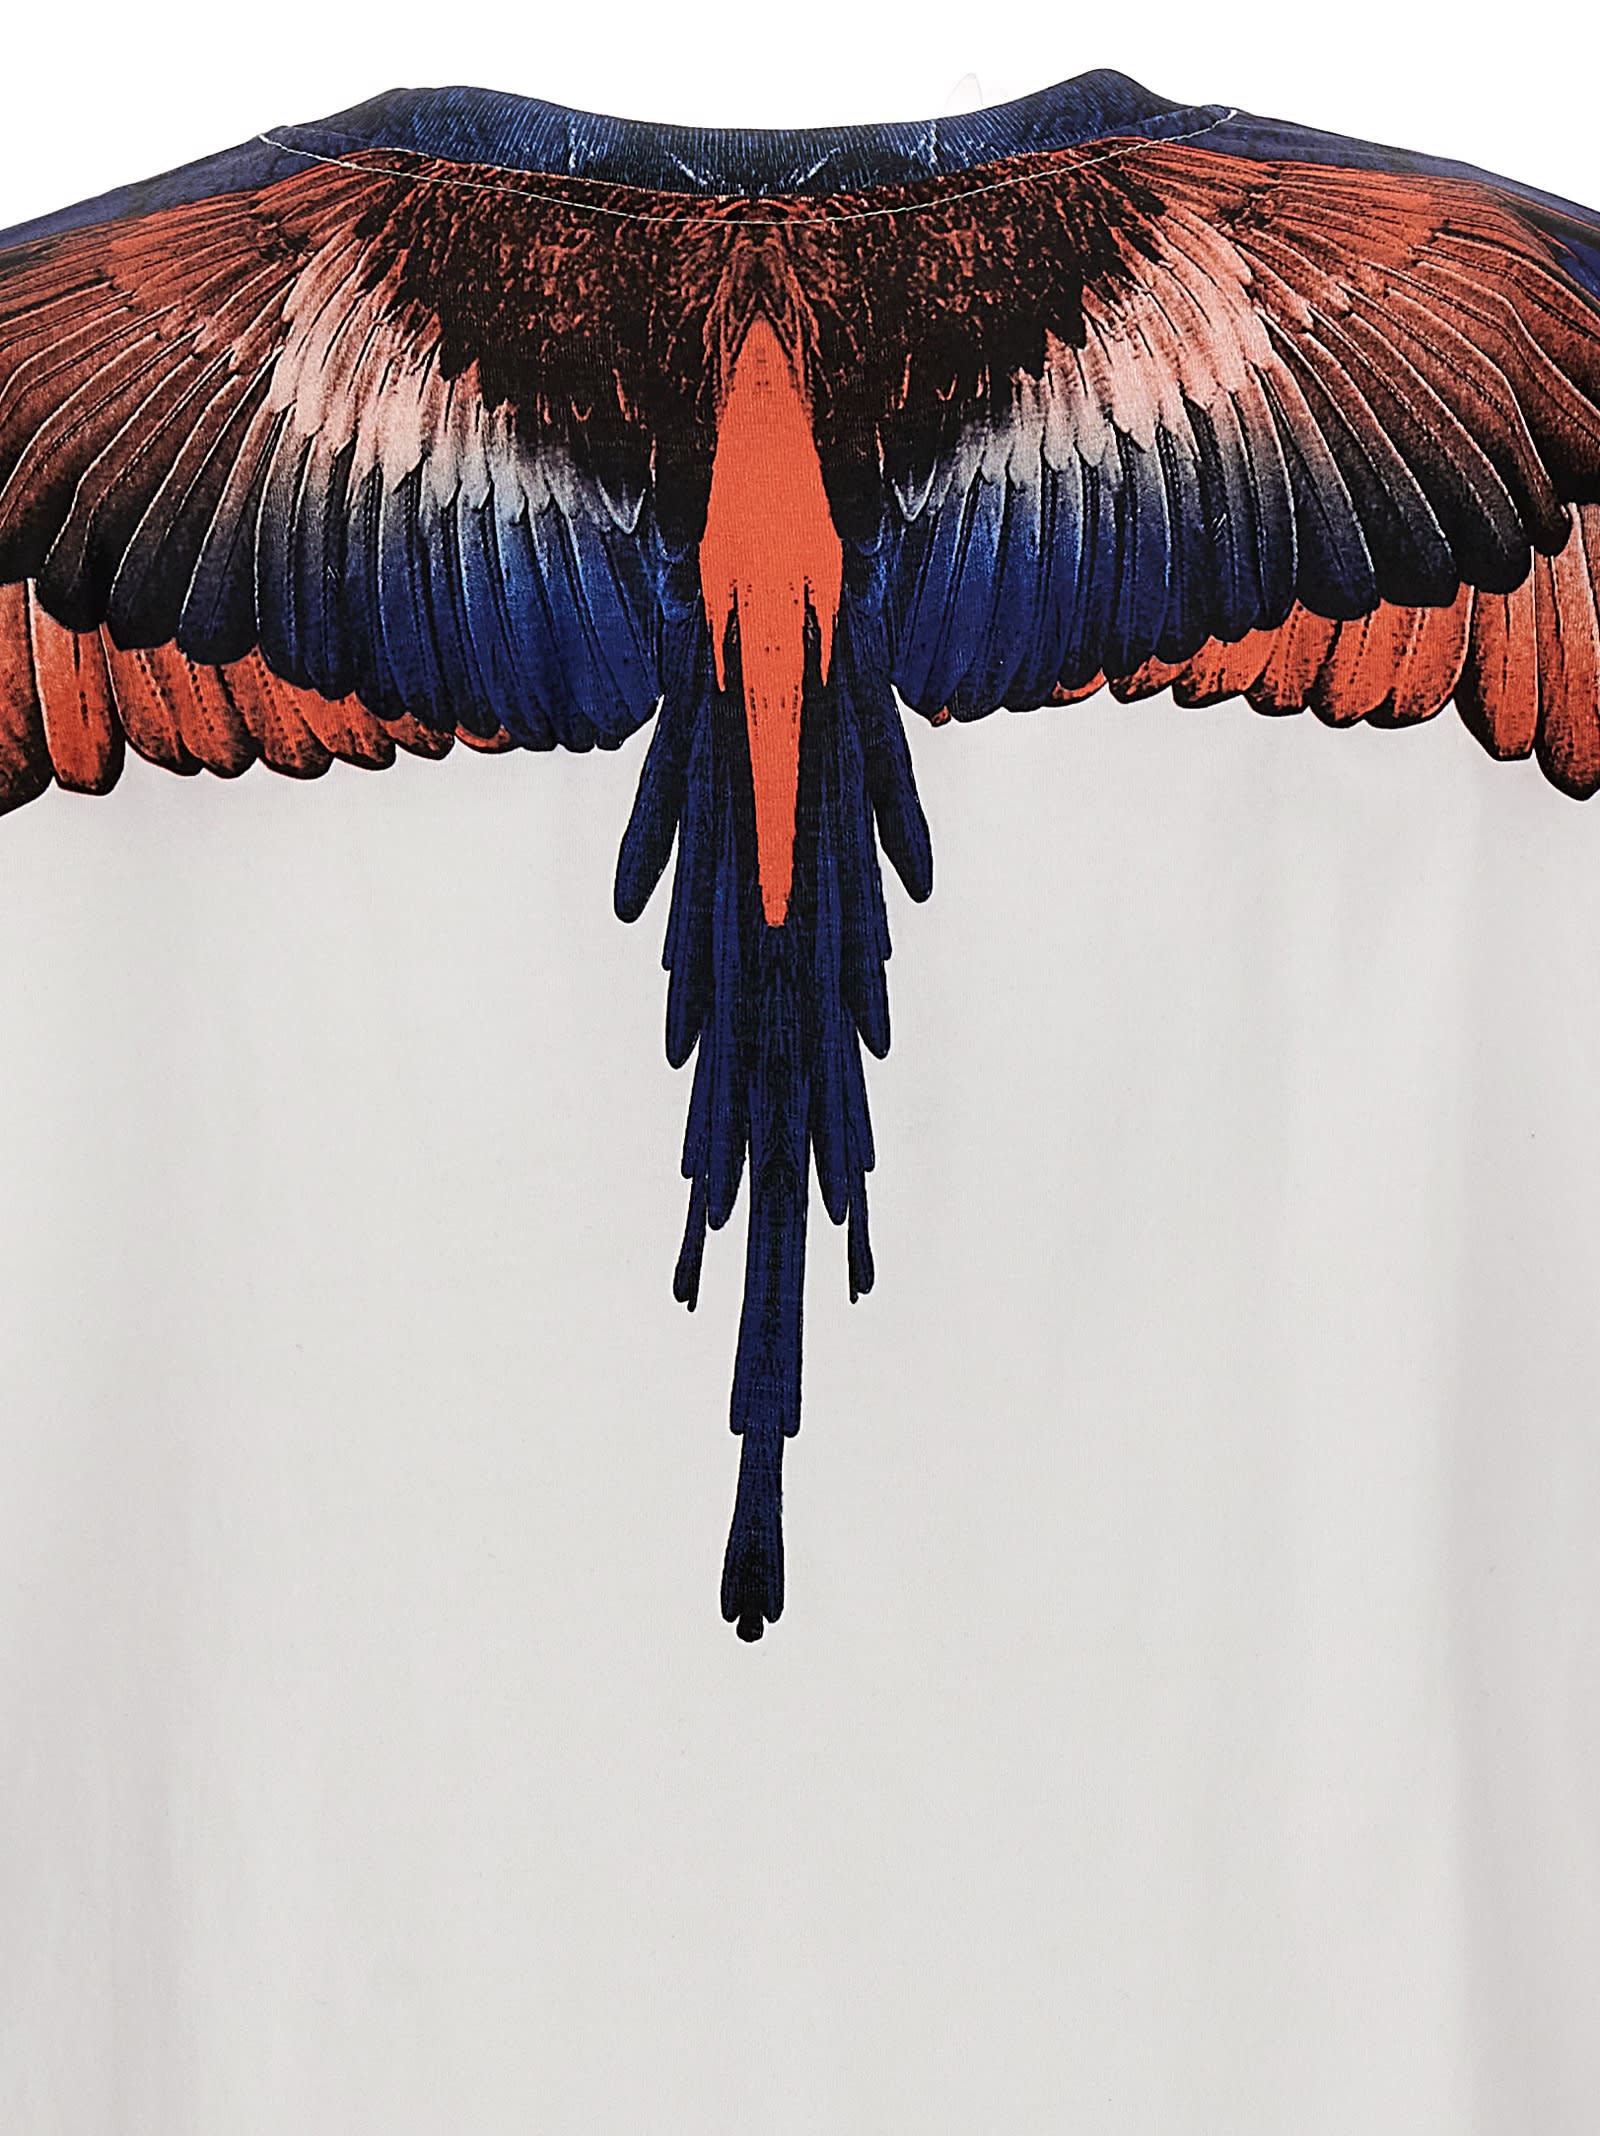 Shop Marcelo Burlon County Of Milan Icon Wings T-shirt In Multicolor